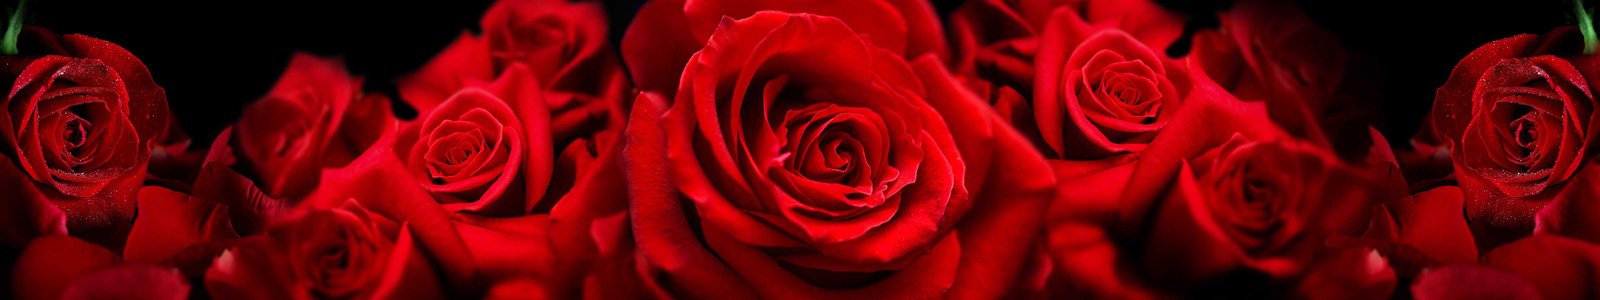 №7362 - Роскошные розы крупным планом с избранным фокусом